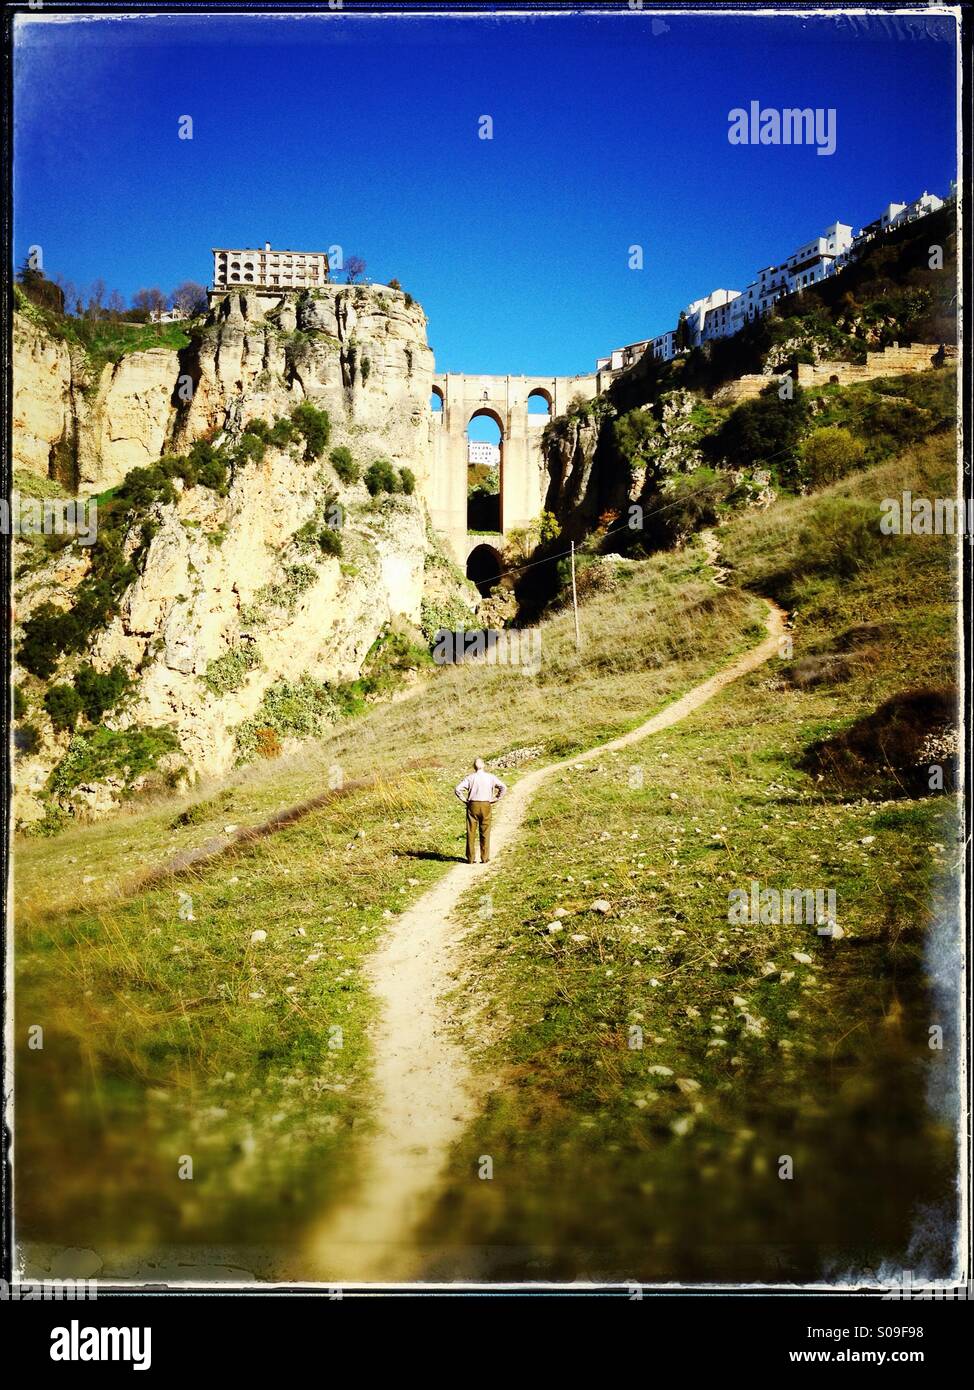 Ronda, Province de Malaga, Andalousie, au sud, en Espagne. Vue de Puente Nuevo, ou le nouveau pont. Parador National sur la gauche du pont. Banque D'Images